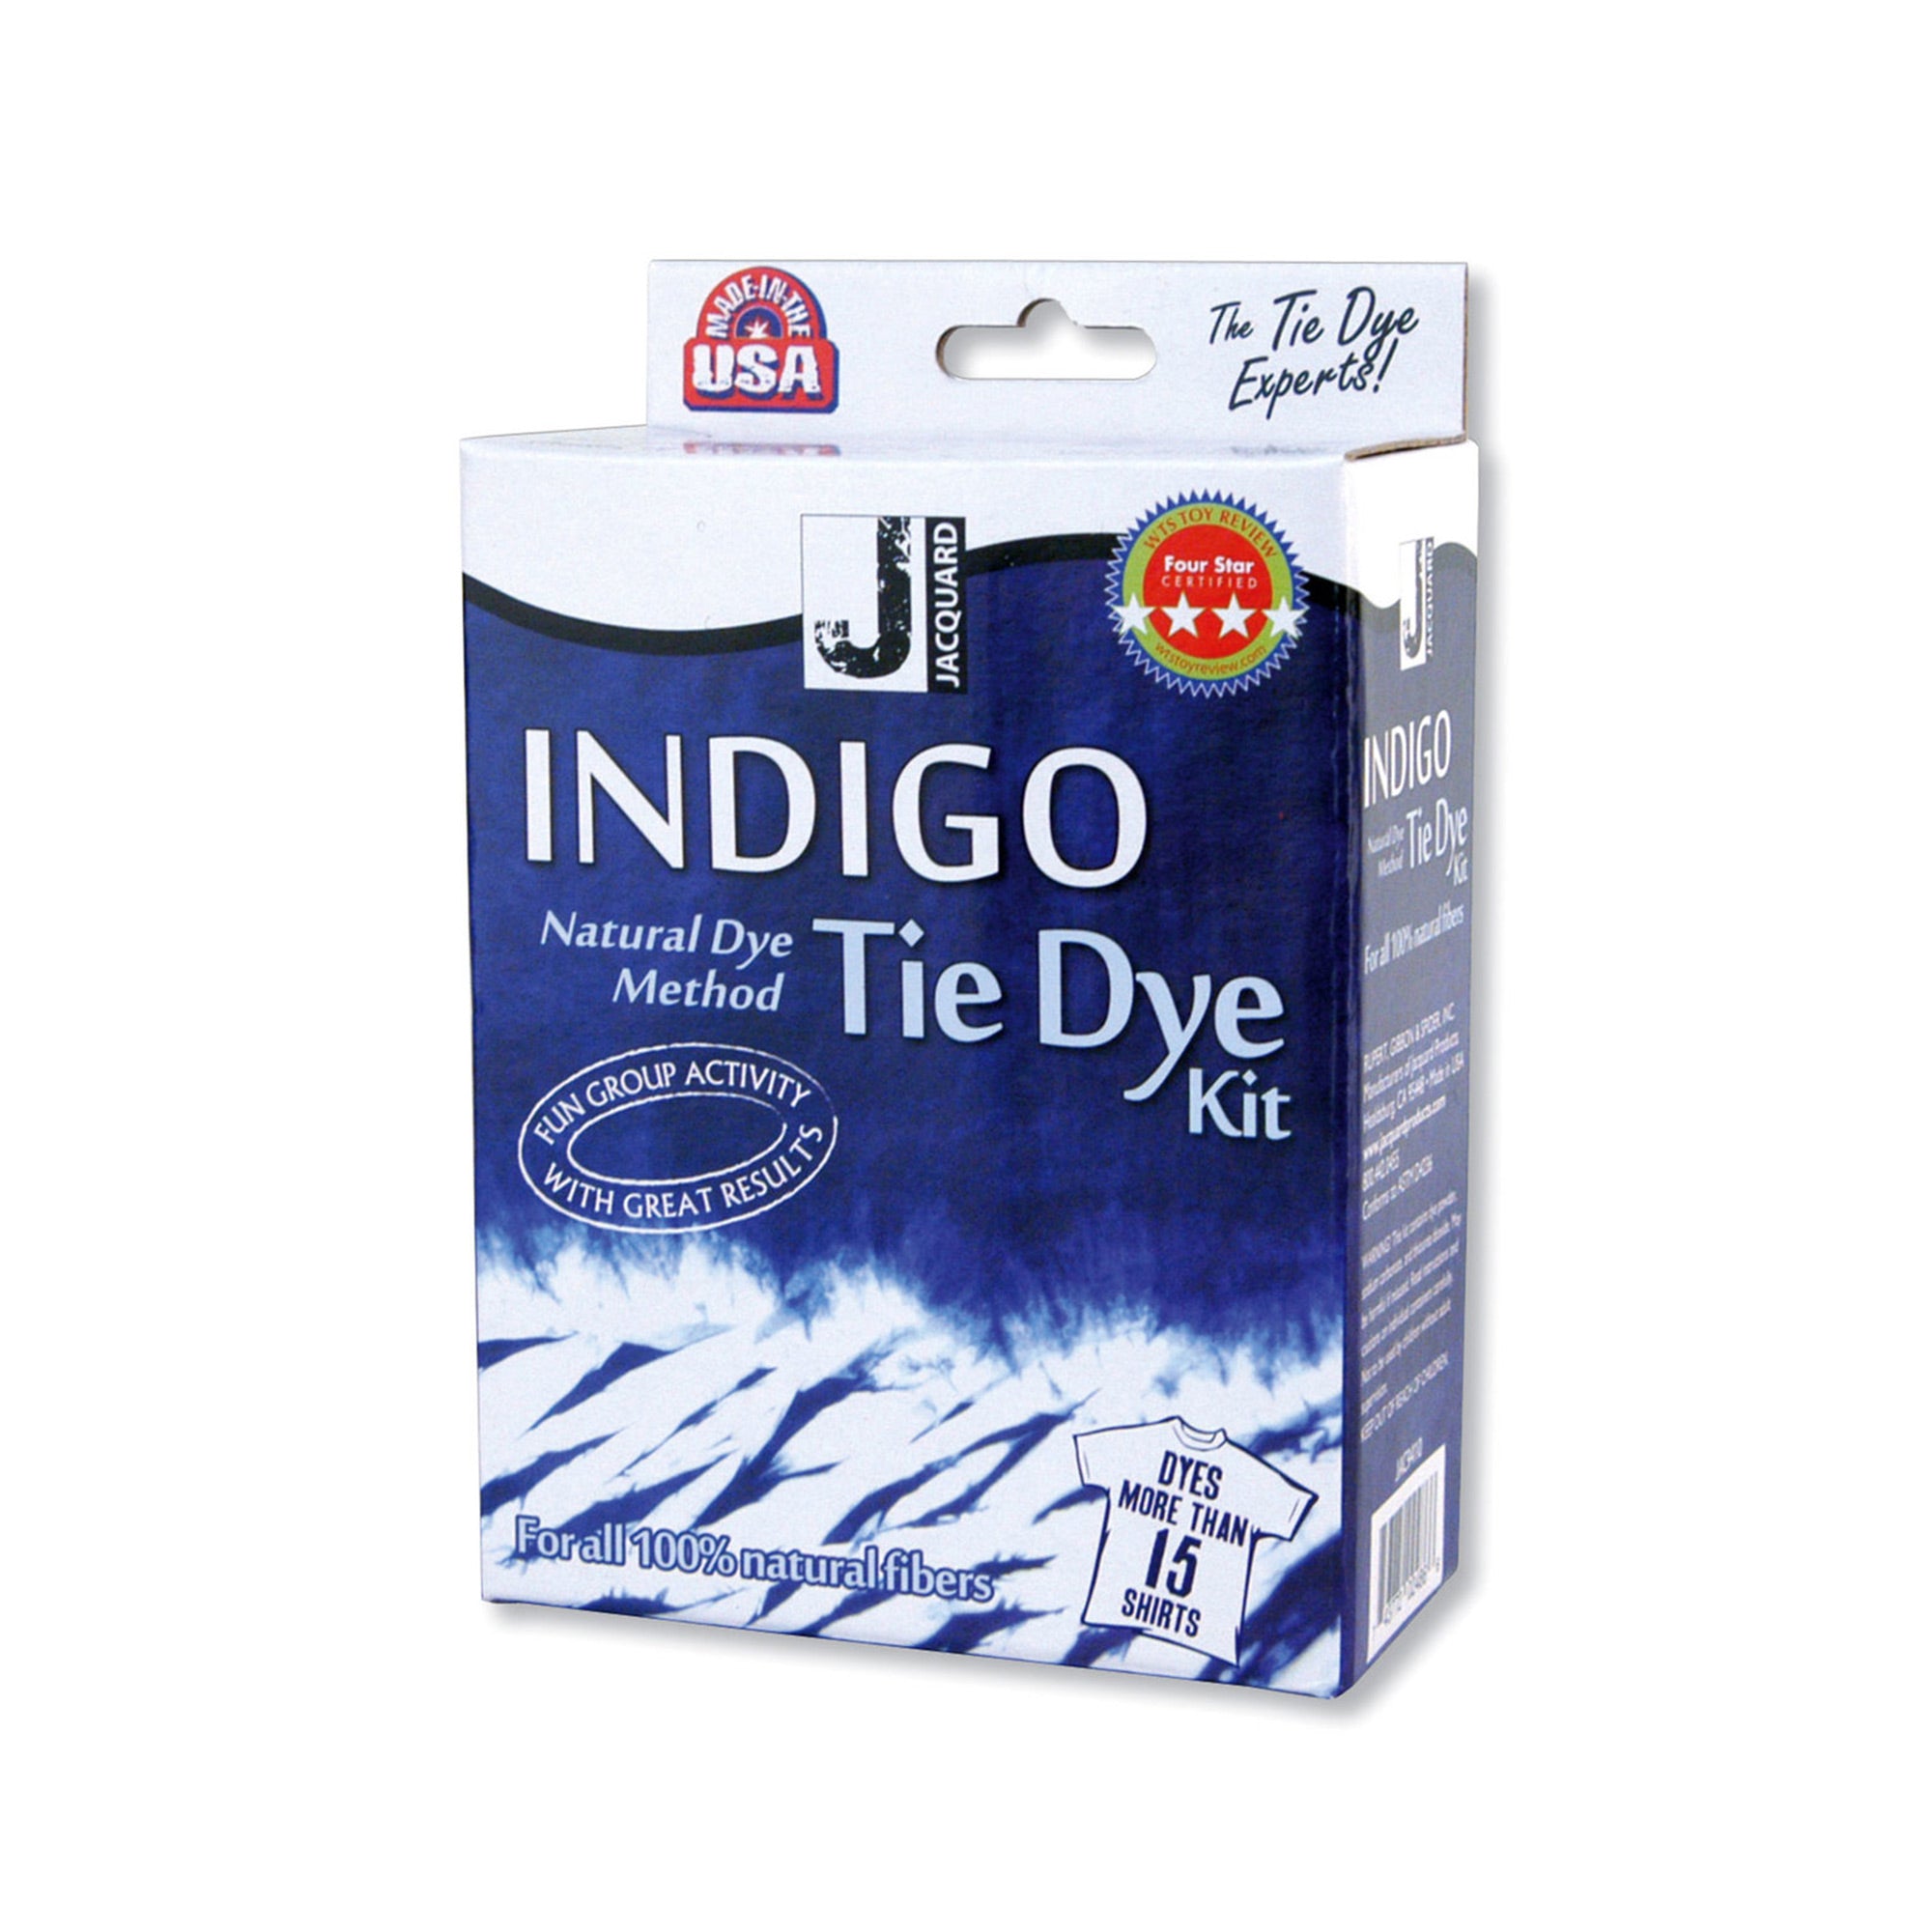 Indigo Tie-Dye Kit - Bilingual